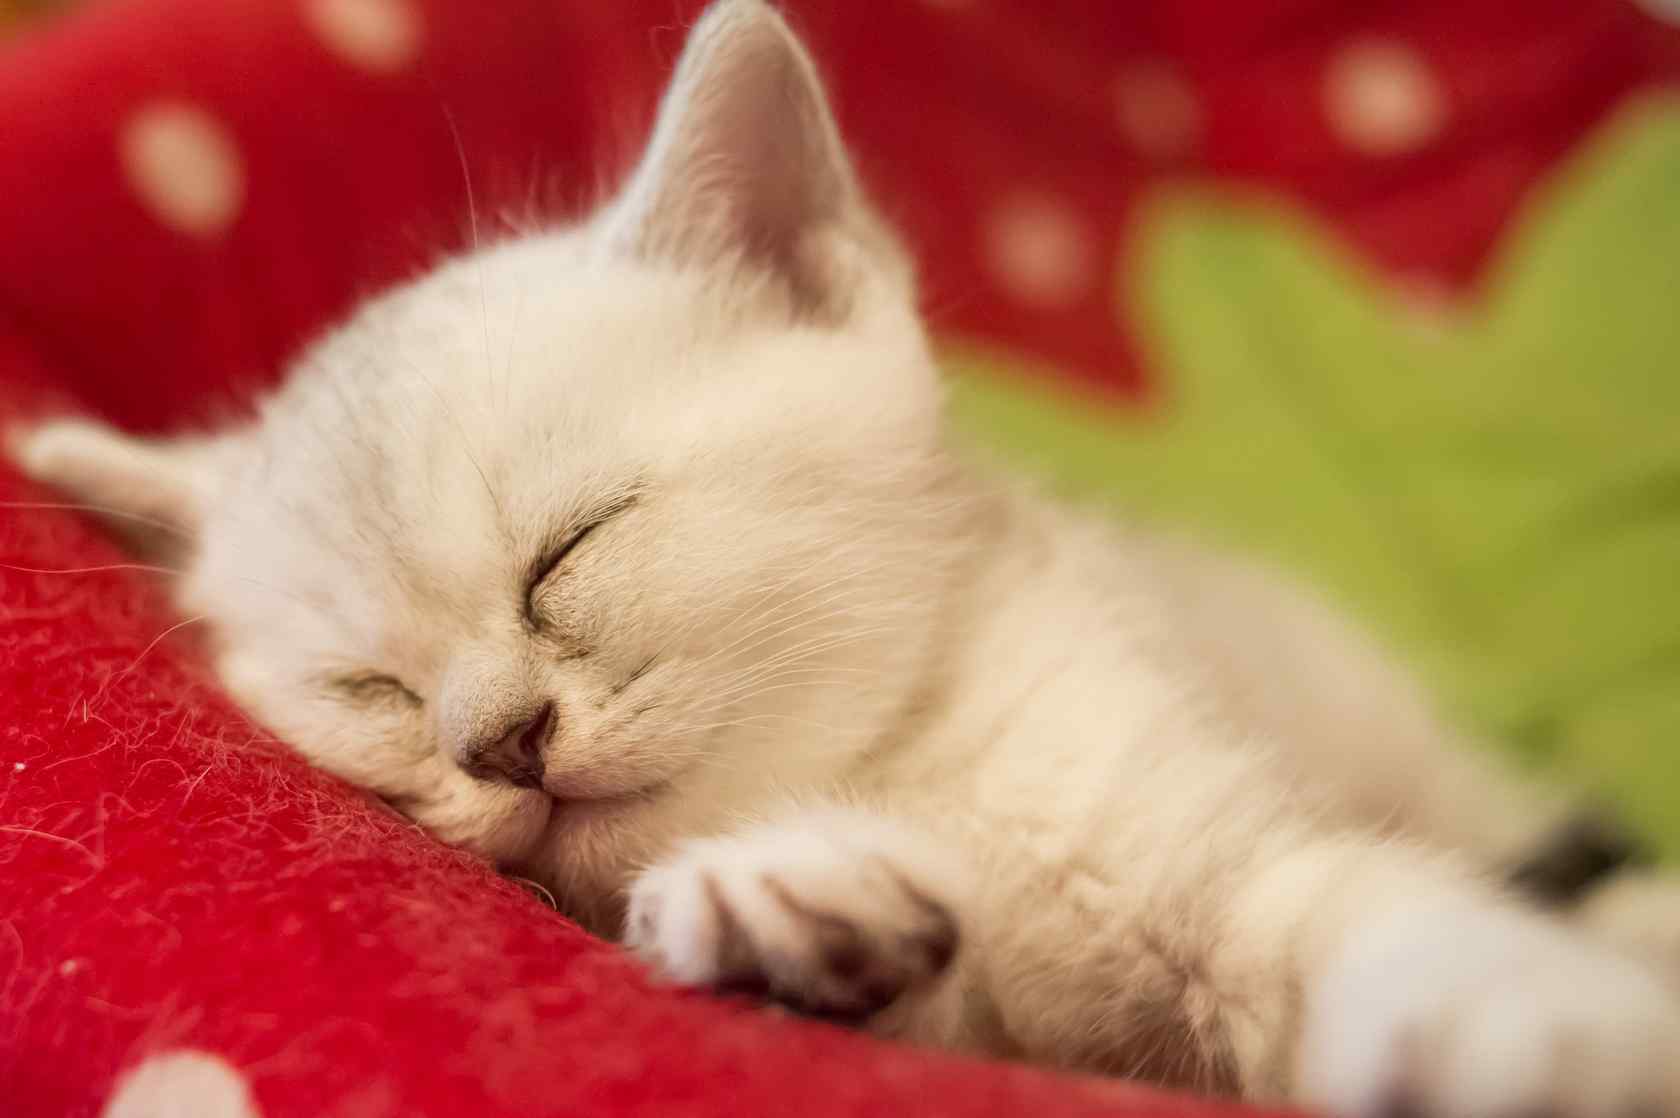 睡着的可爱英短小奶猫桌面壁纸